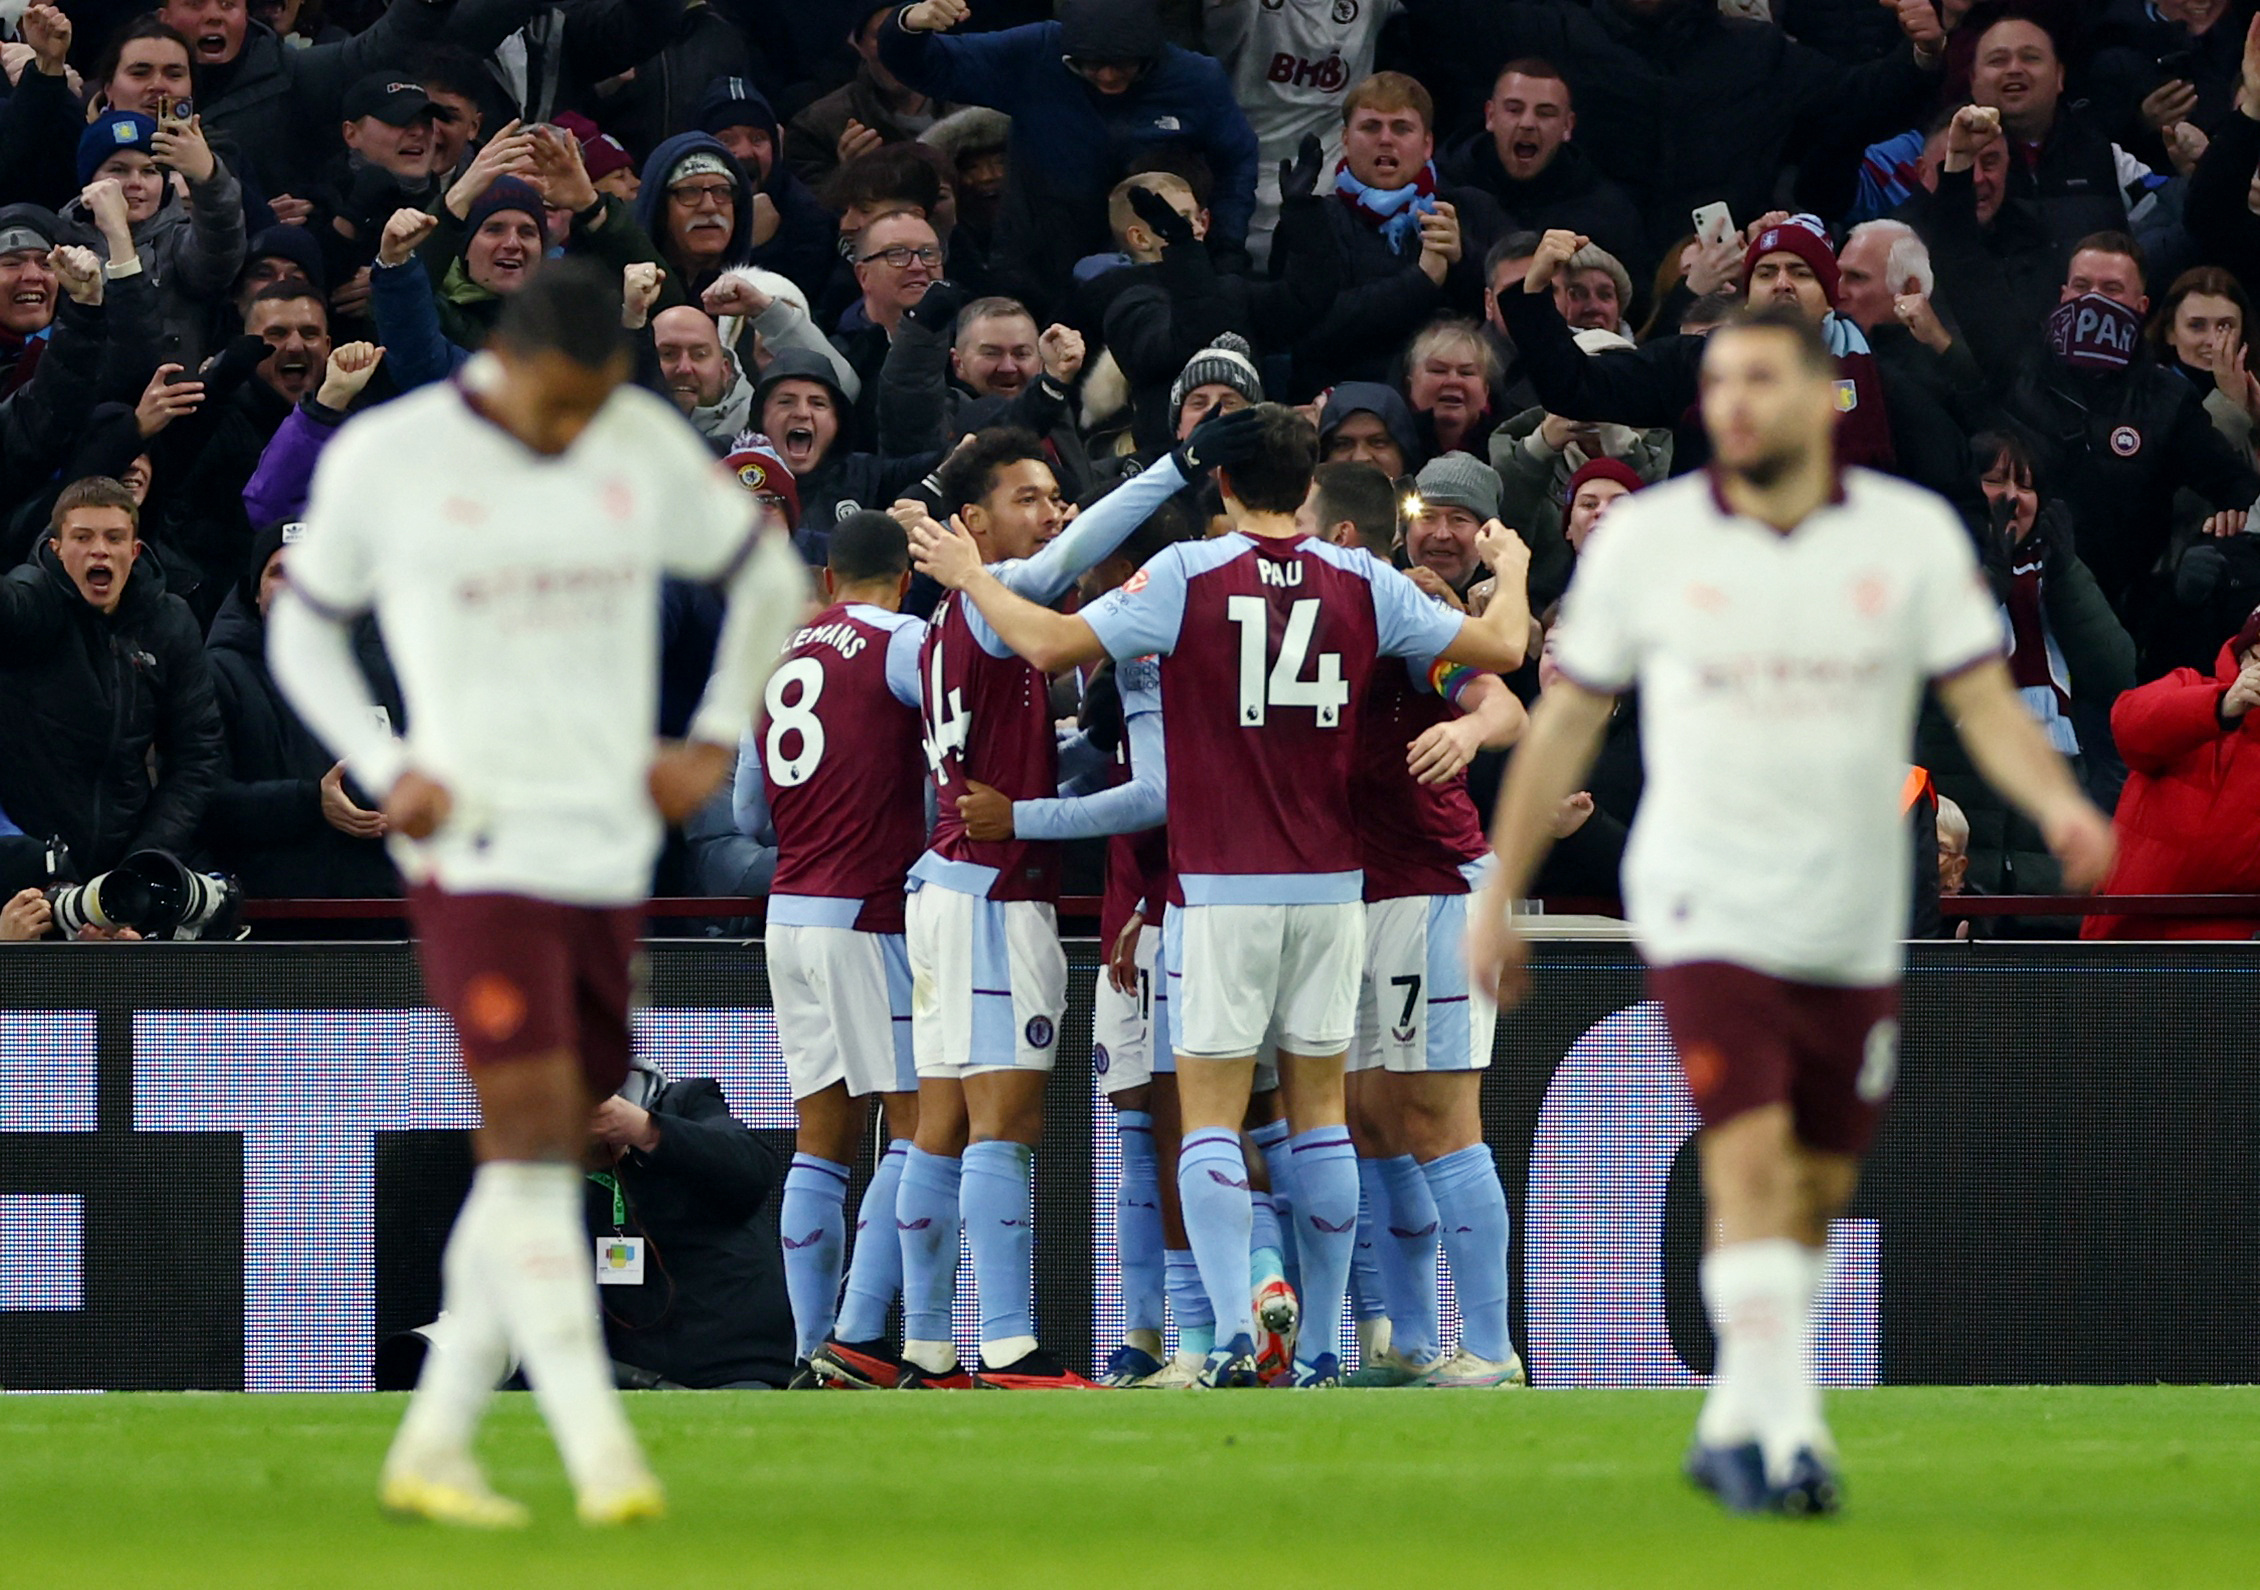 Aston Villa vs Manchester City (1-0) : Les Cityzens dans le mal face à des Villans héroïques